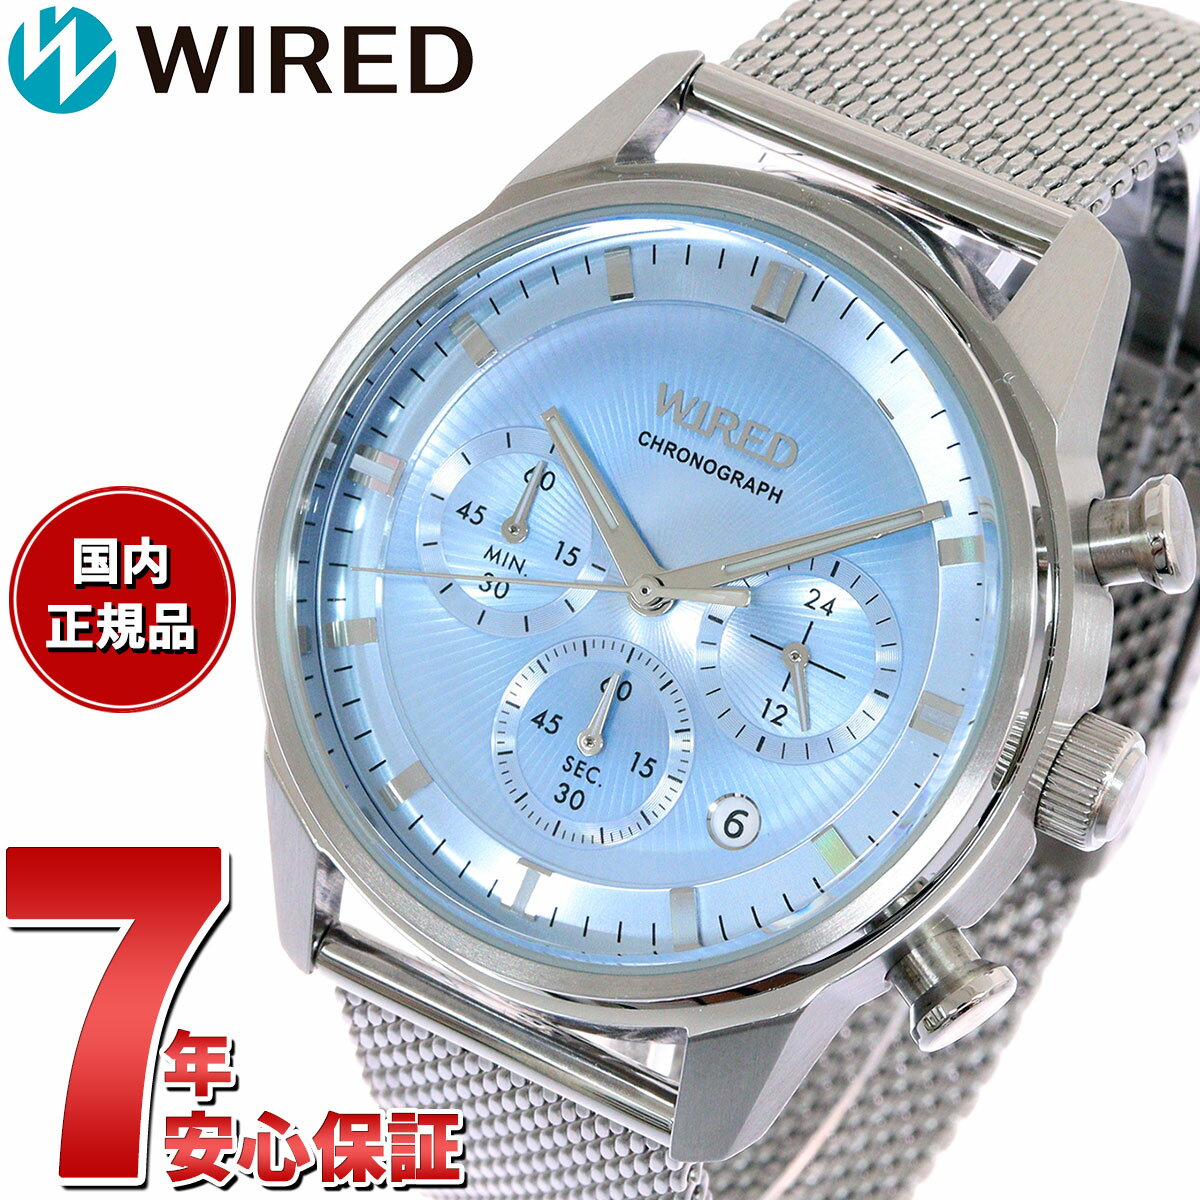 ワイアード セイコー ワイアード SEIKO WIRED 腕時計 メンズ クロノグラフ TOKYO SORA AGAT454